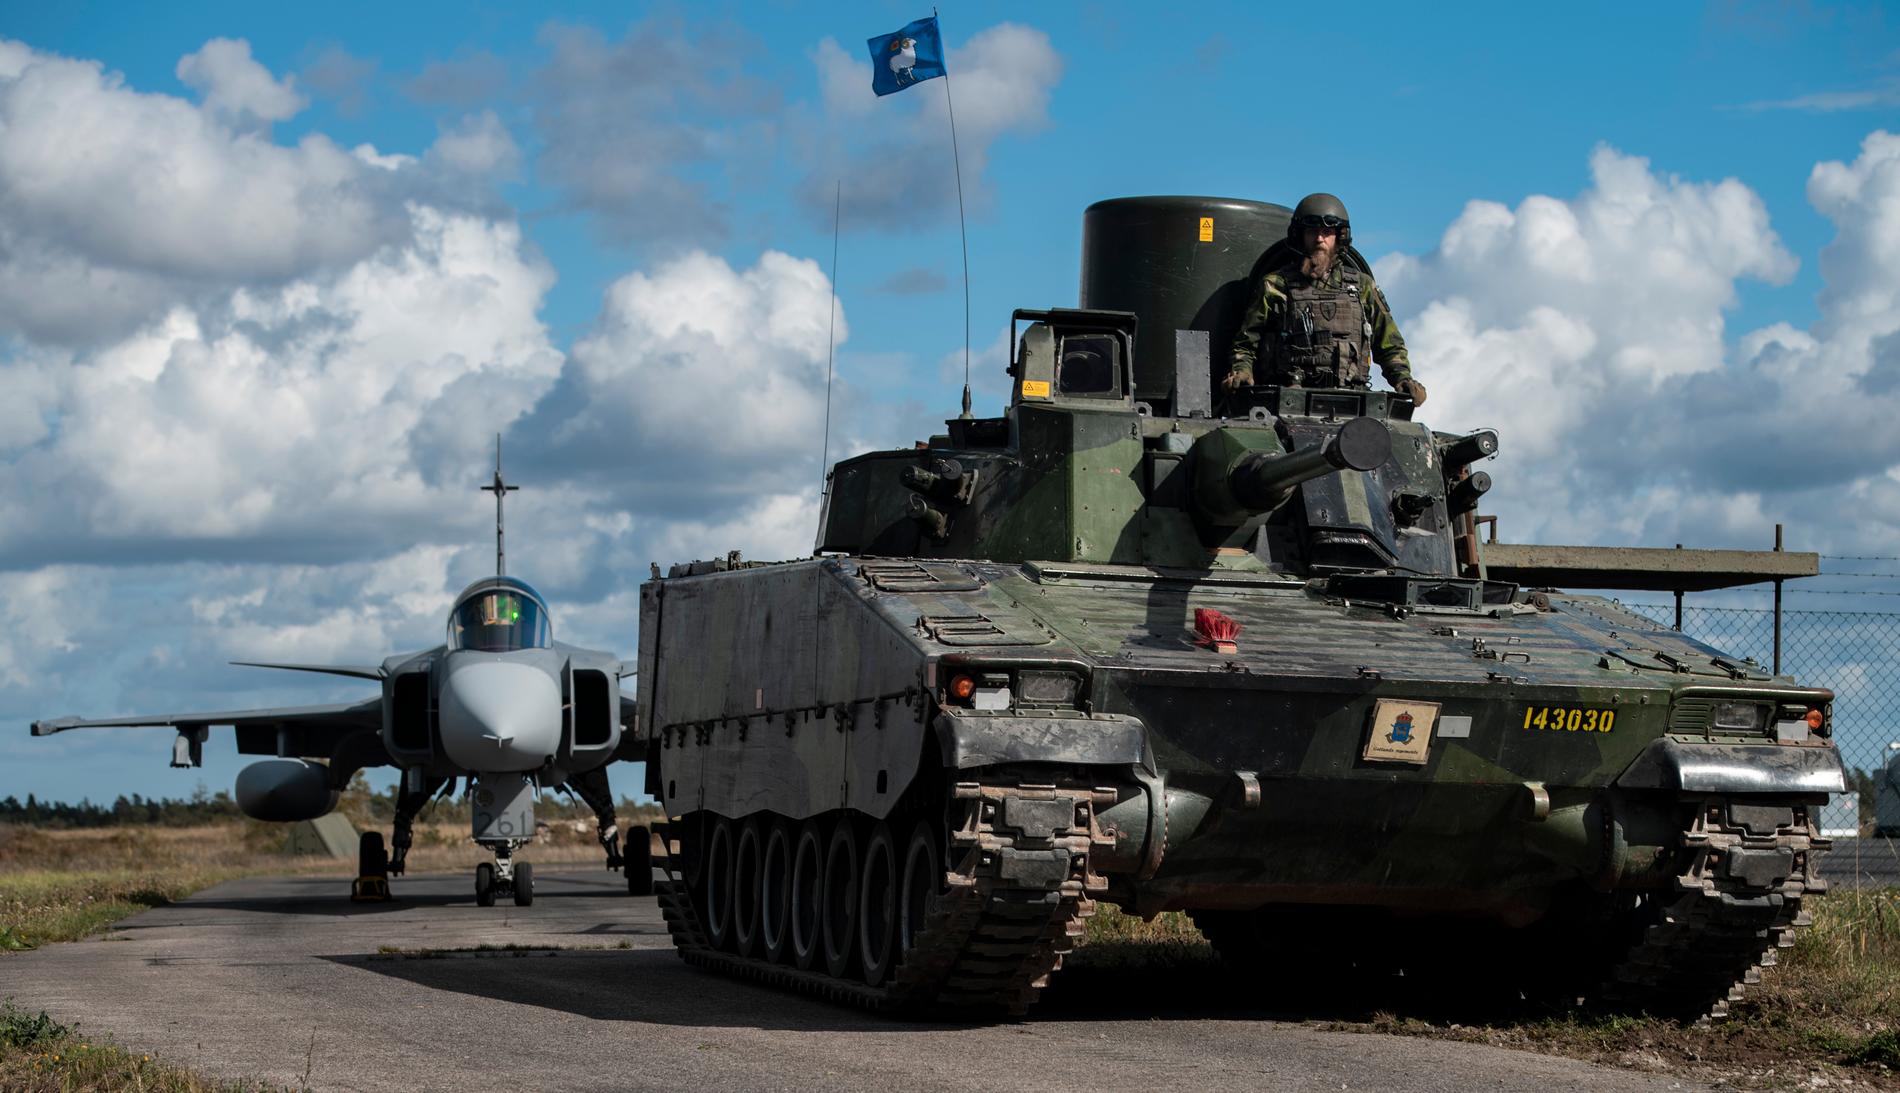 Försvarsmaktens beredskapsinsats på Gotland och kring Östersjön.